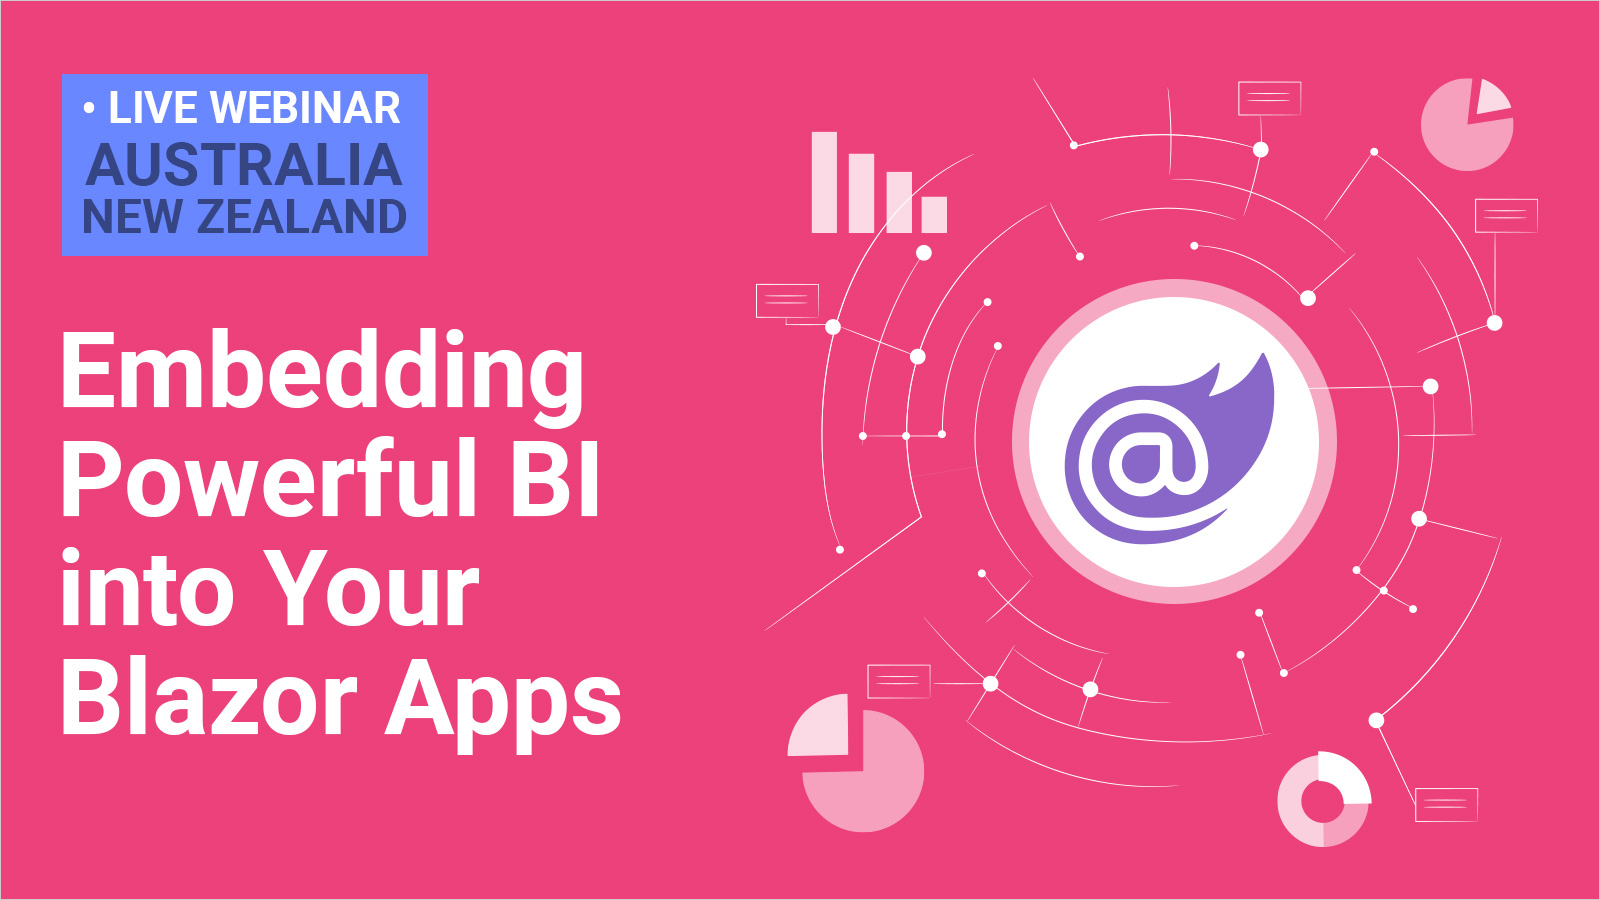 Embedding Powerful BI into Your Blazor Apps  - Australasia